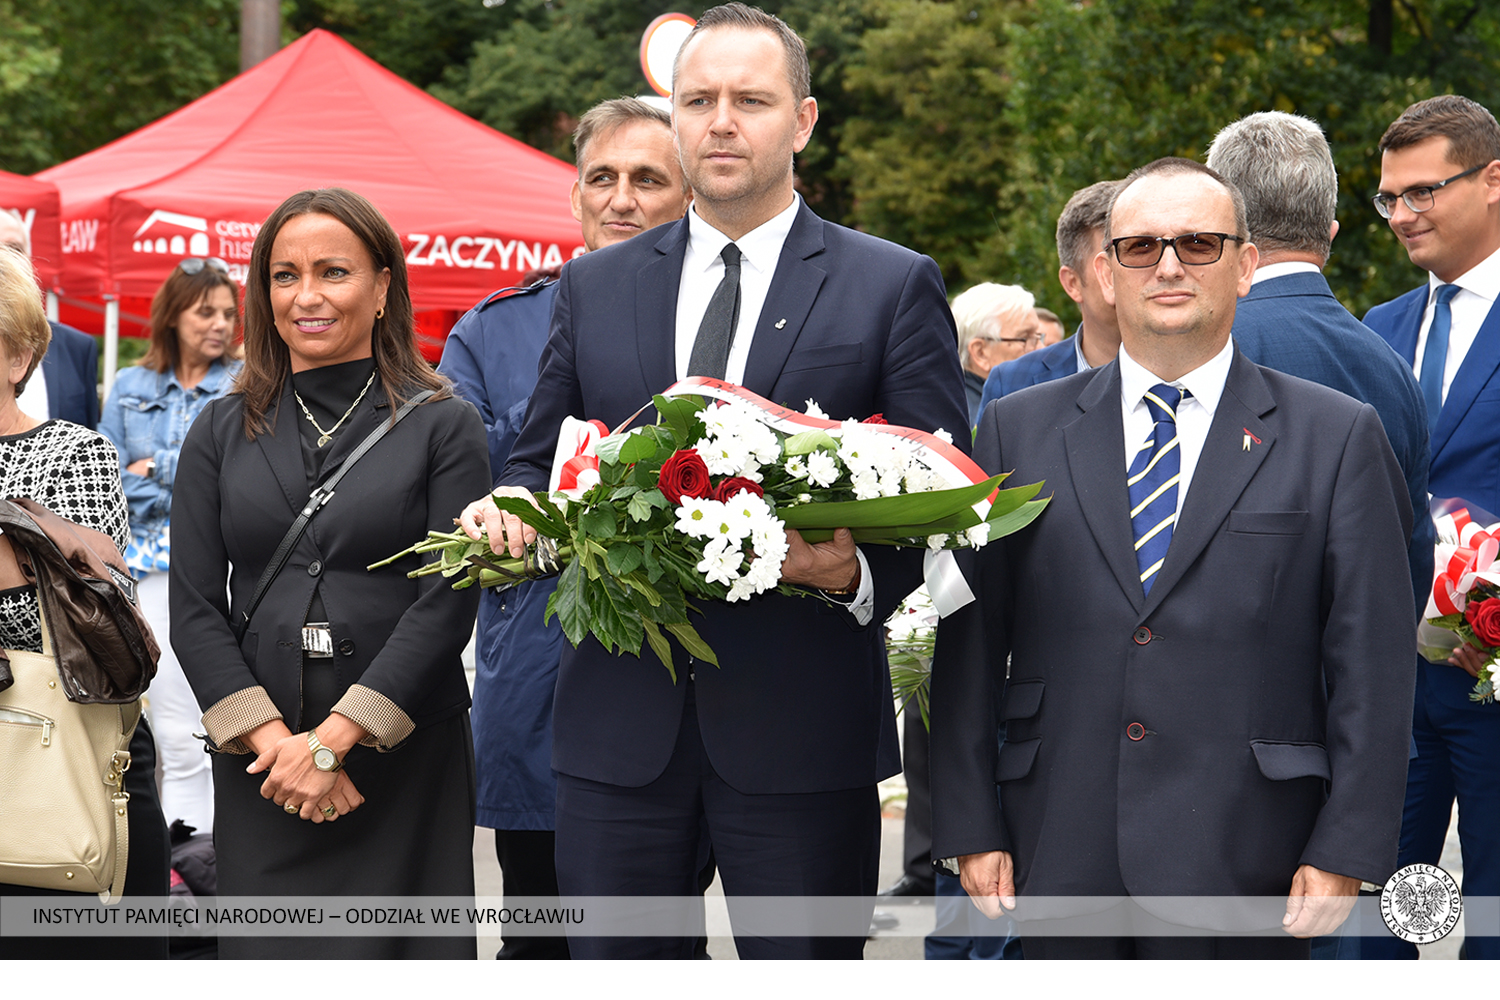 Składanie wieńców pod tablicą poświęconą Lechowi Kaczyńskiemu przez delegację IPN na czele z prezesem IPN dr. Karolem Nawrockim